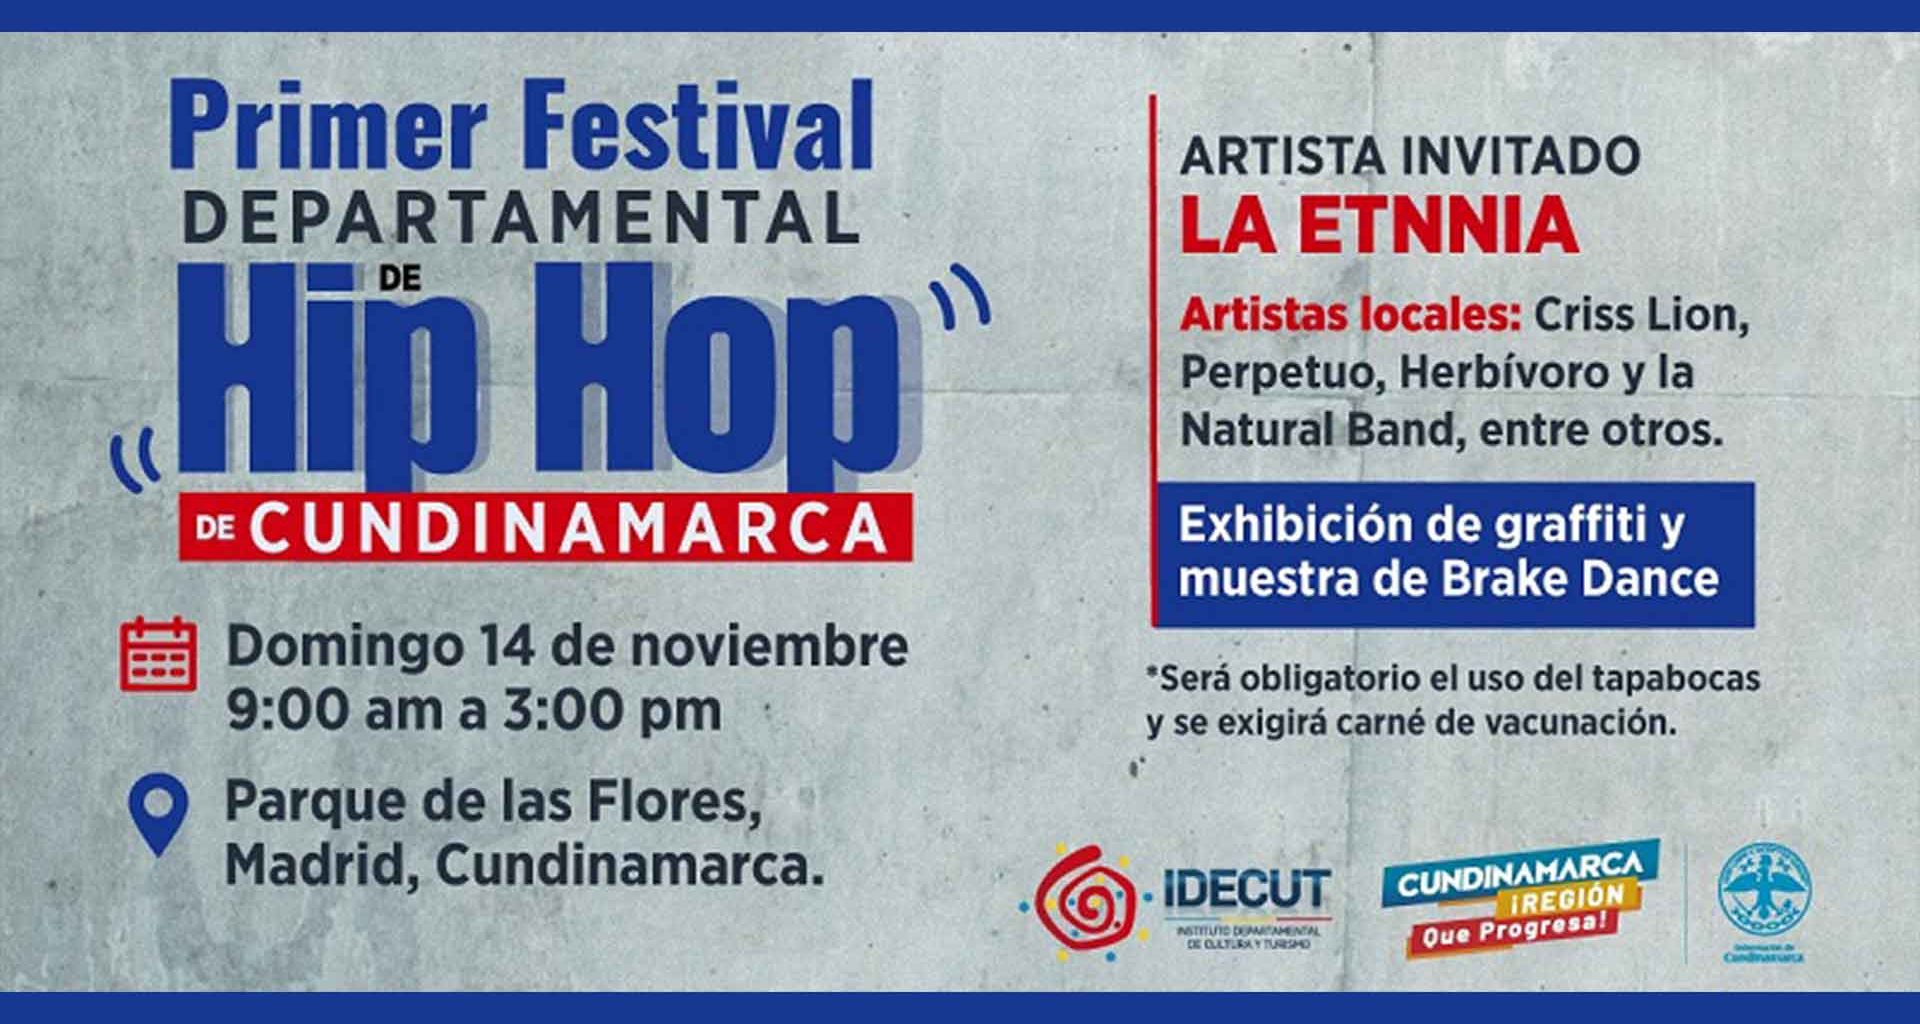 Encuentro departamental de Hip Hop en Madrid, Cundinamarca